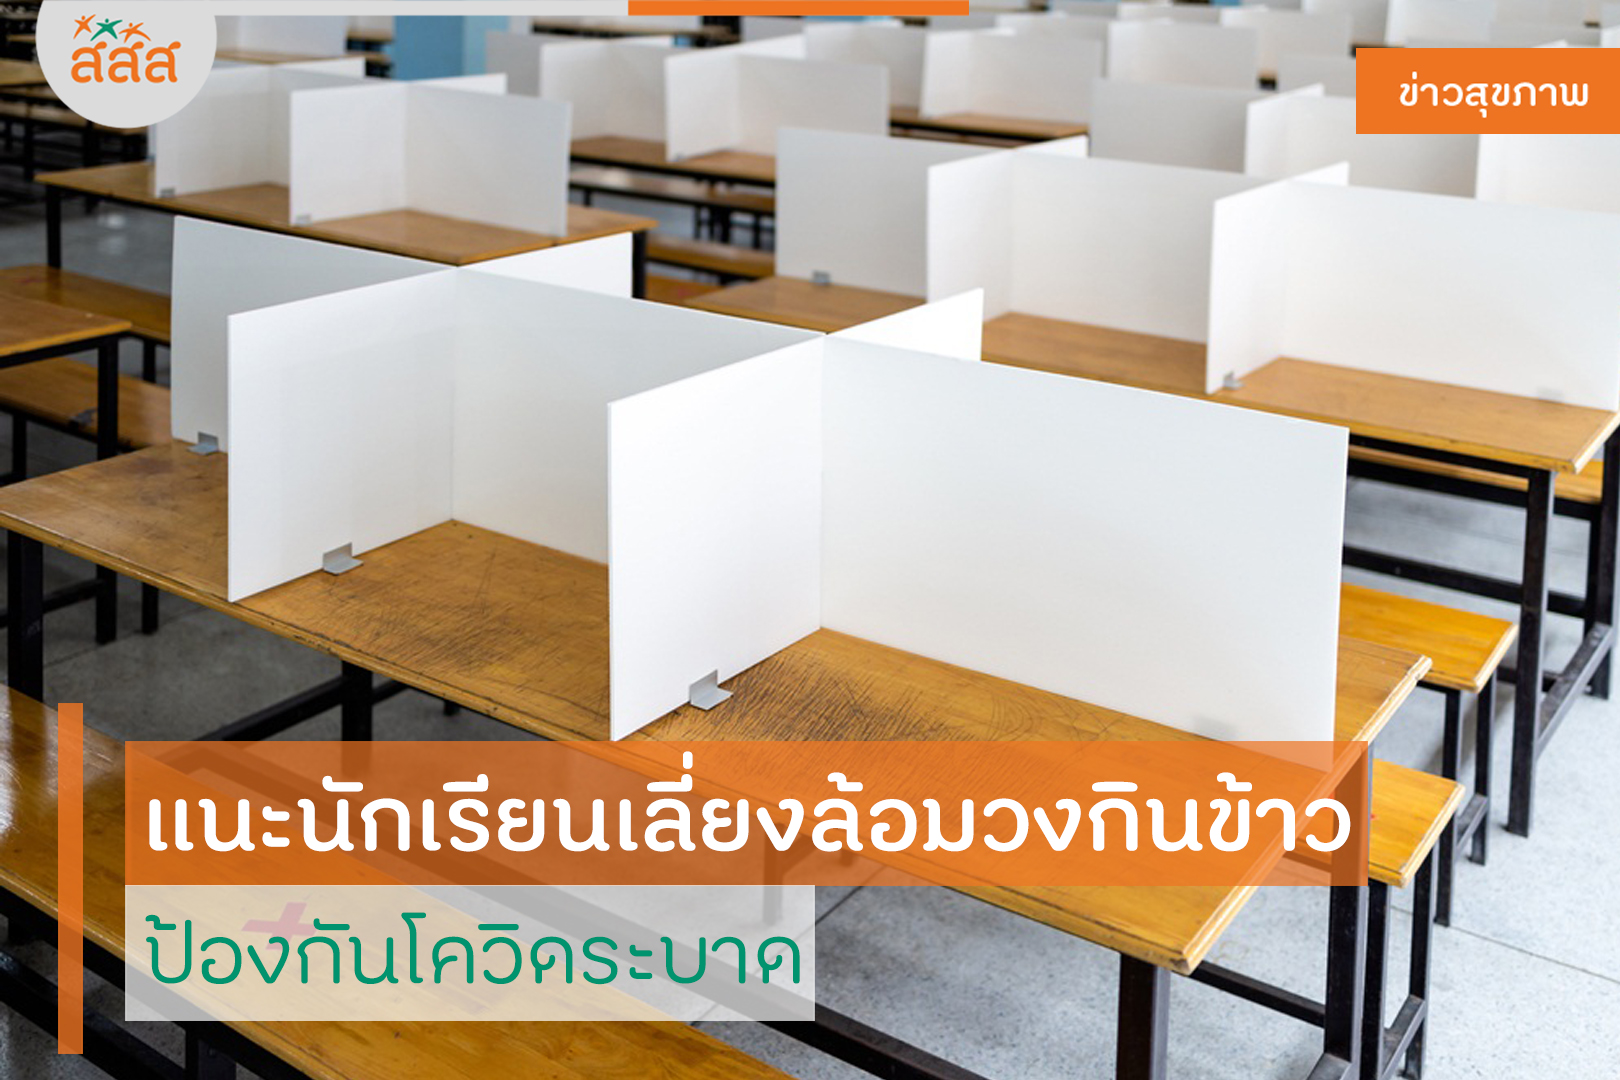 แนะนักเรียนเลี่ยงล้อมวงกินข้าว ป้องกันโควิดระบาด thaihealth